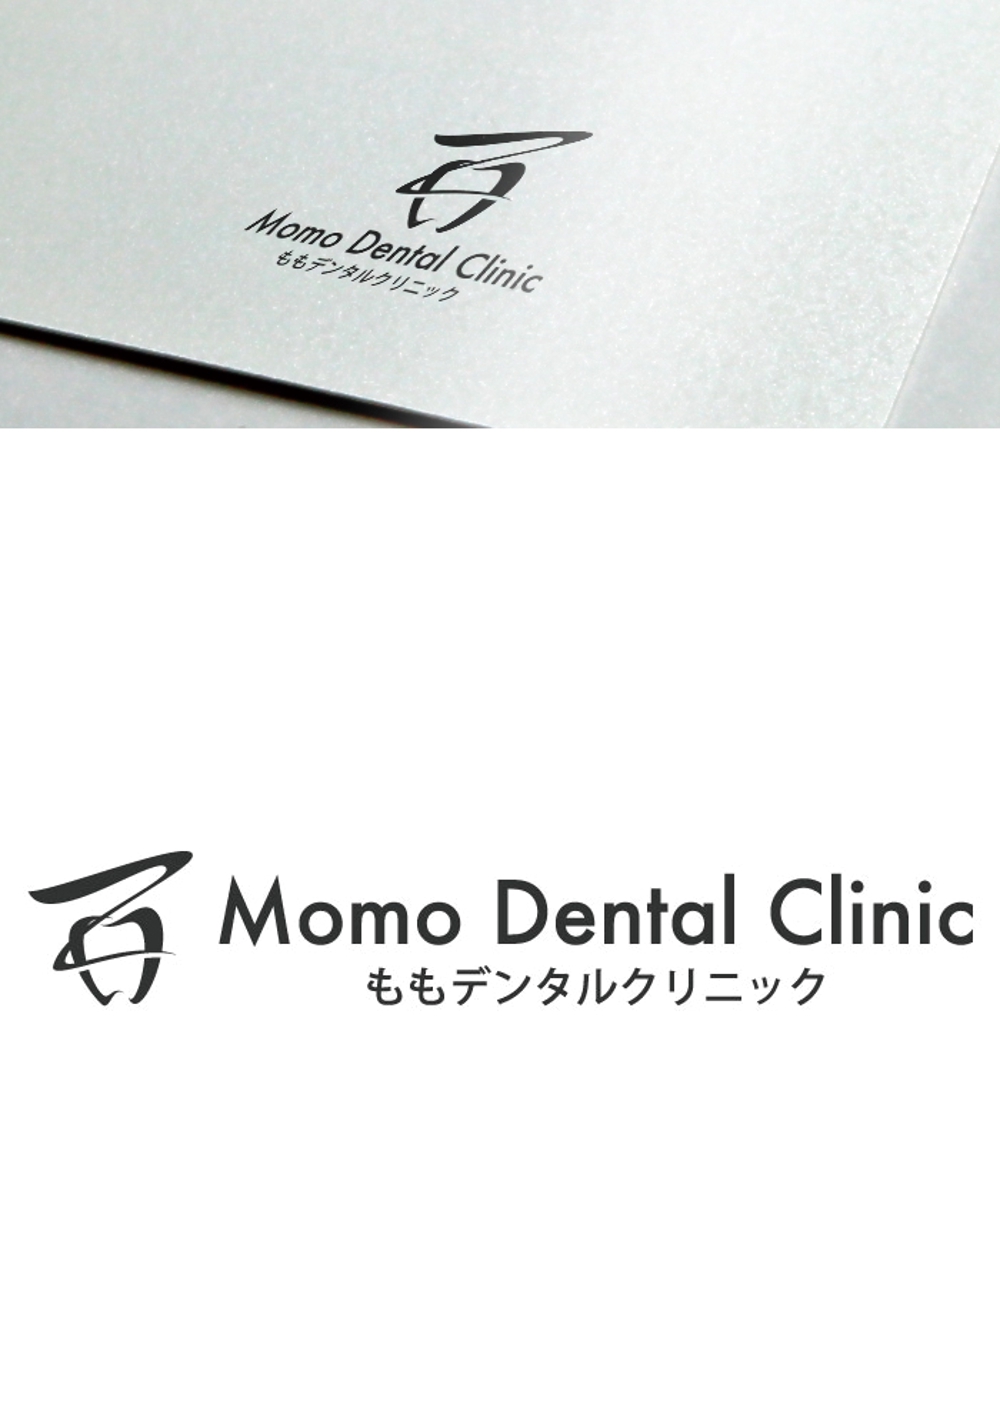 新築歯科医院のロゴ